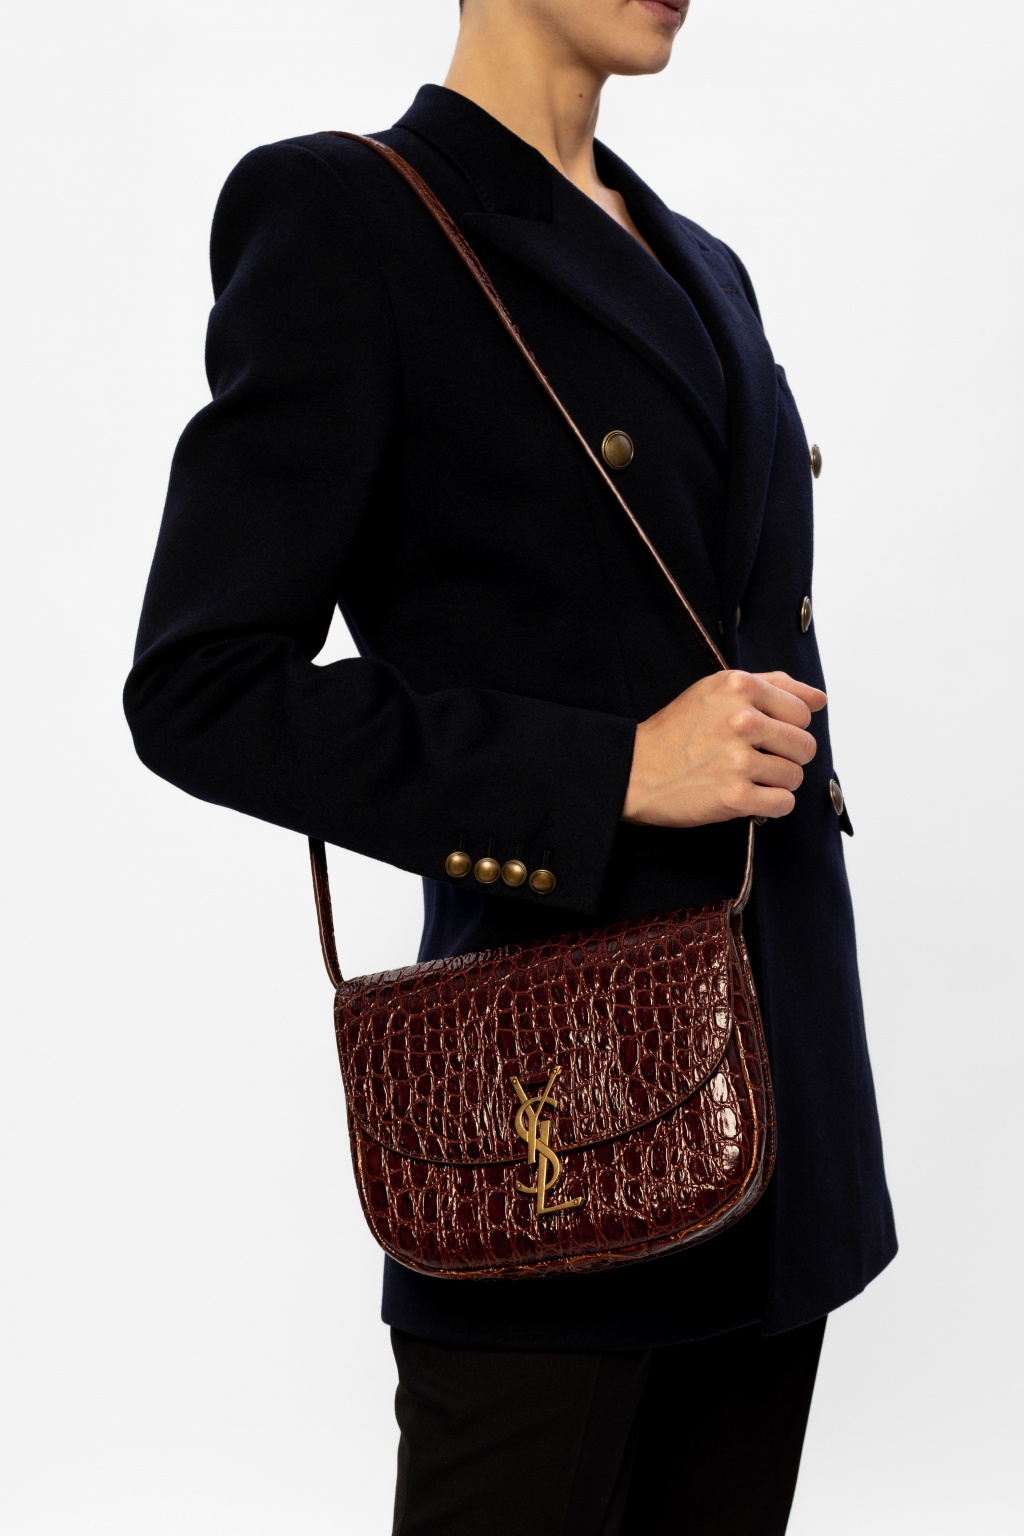 Saint Laurent Kaia Small Croc-effect Leather Shoulder Bag